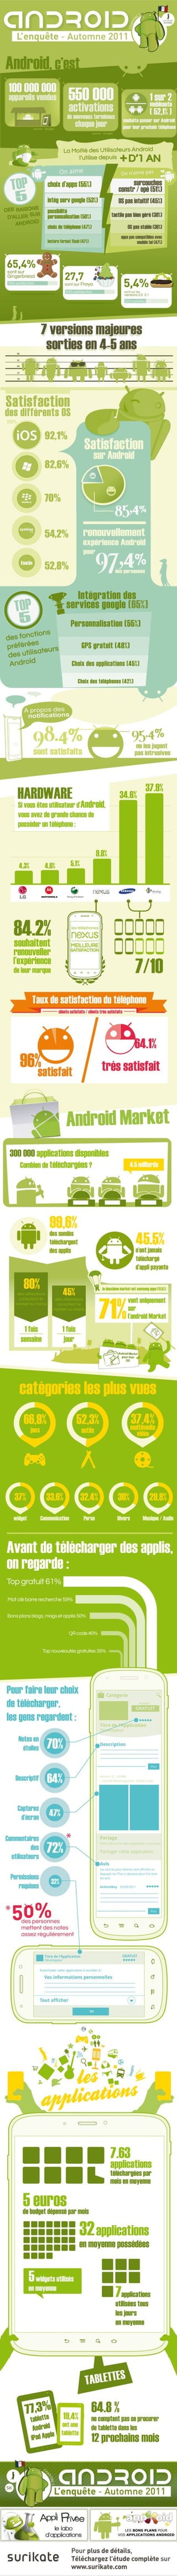 Enquete Android  - Surikate - Automne 2011